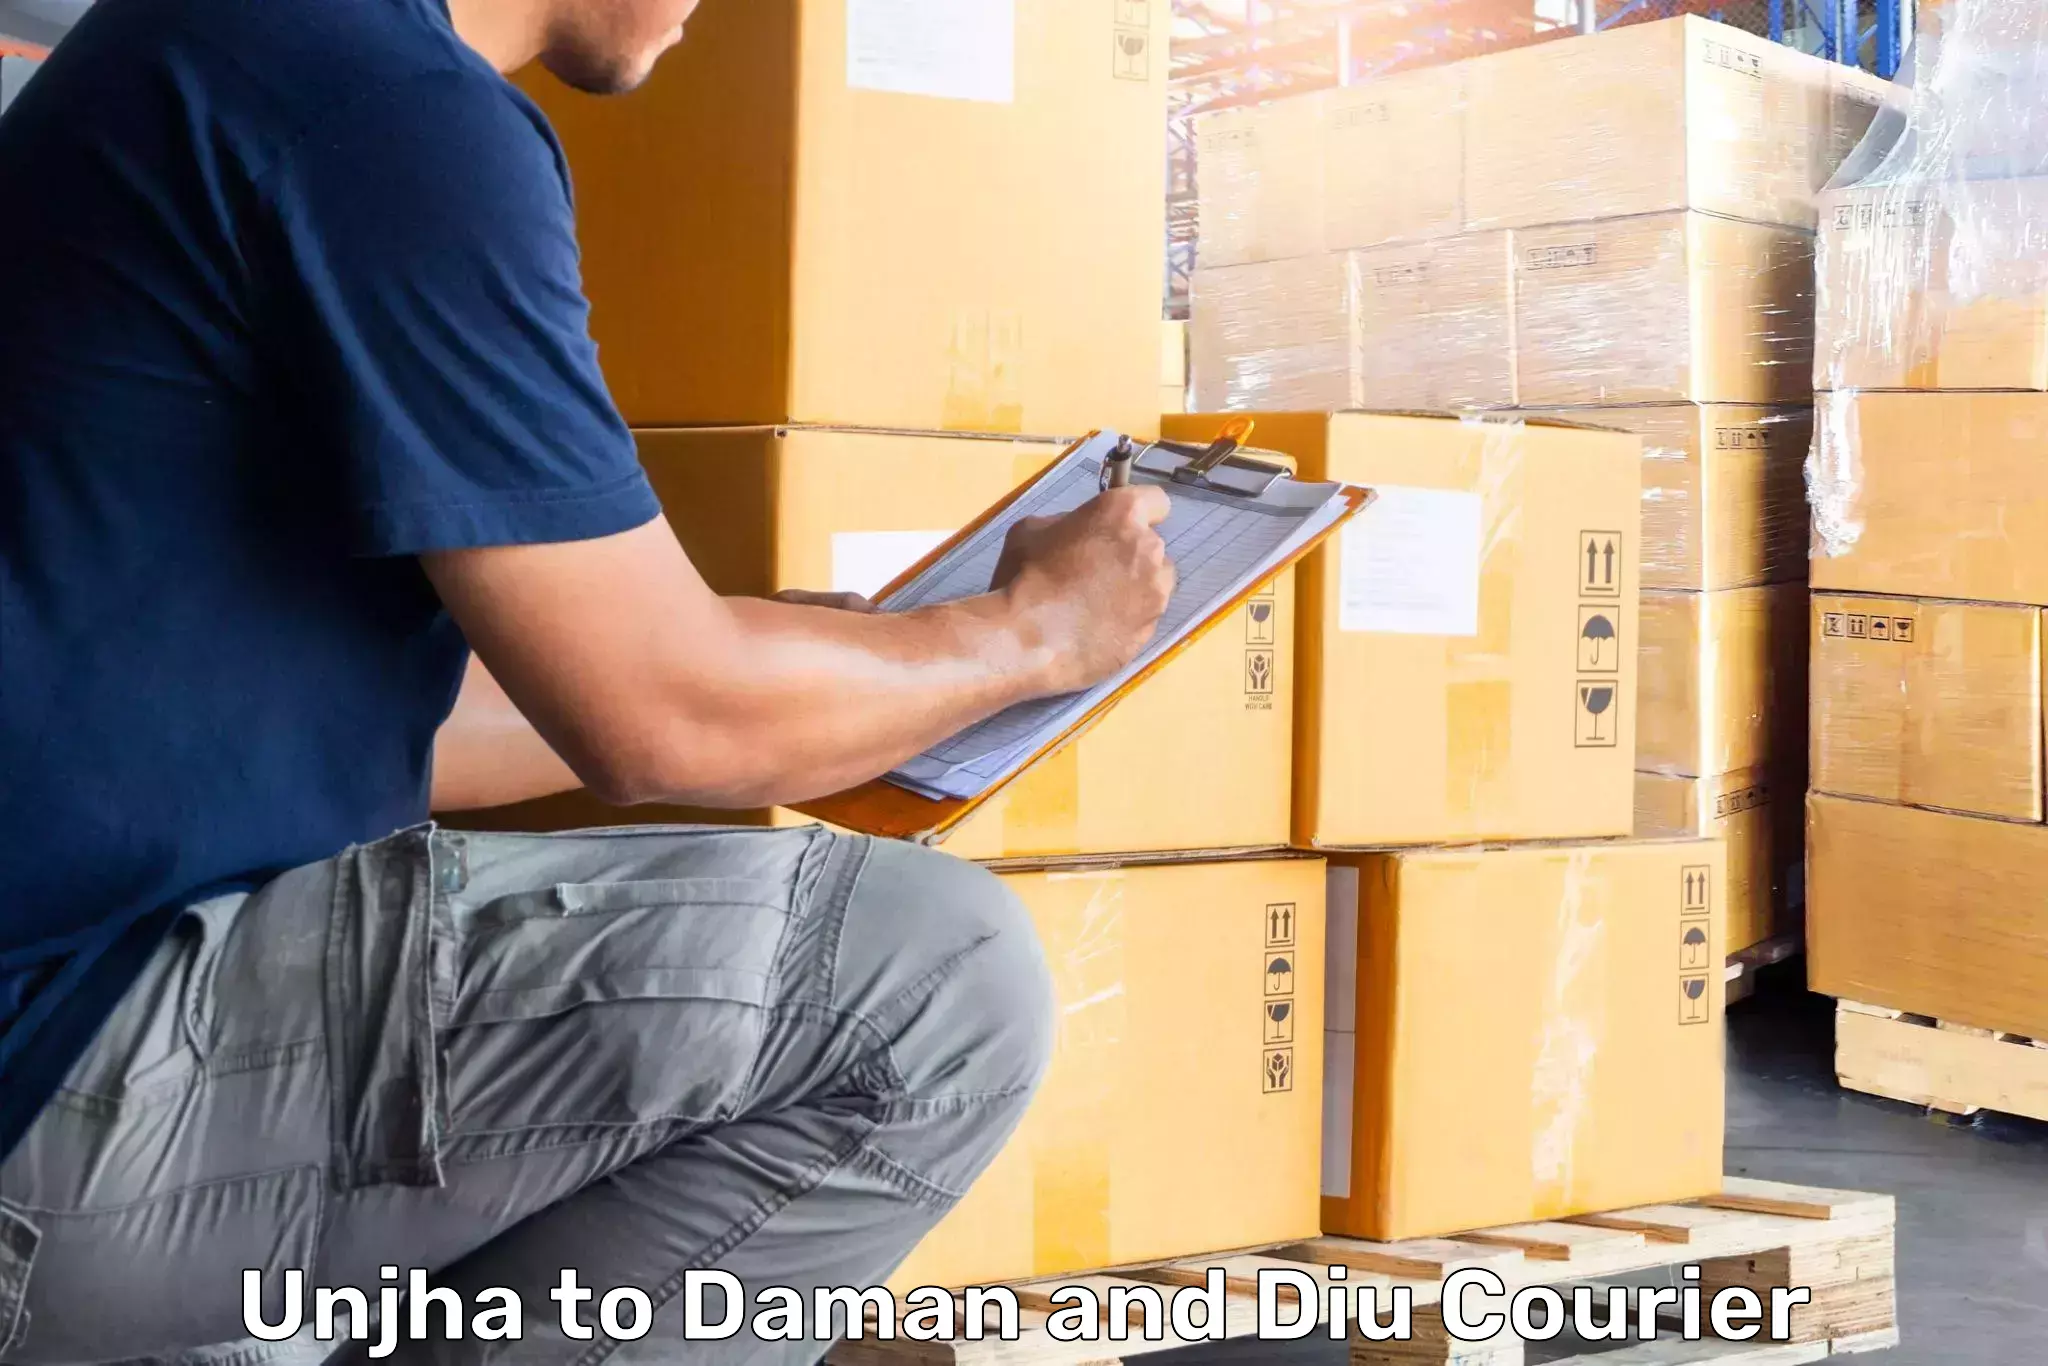 Luggage shipping service Unjha to Diu